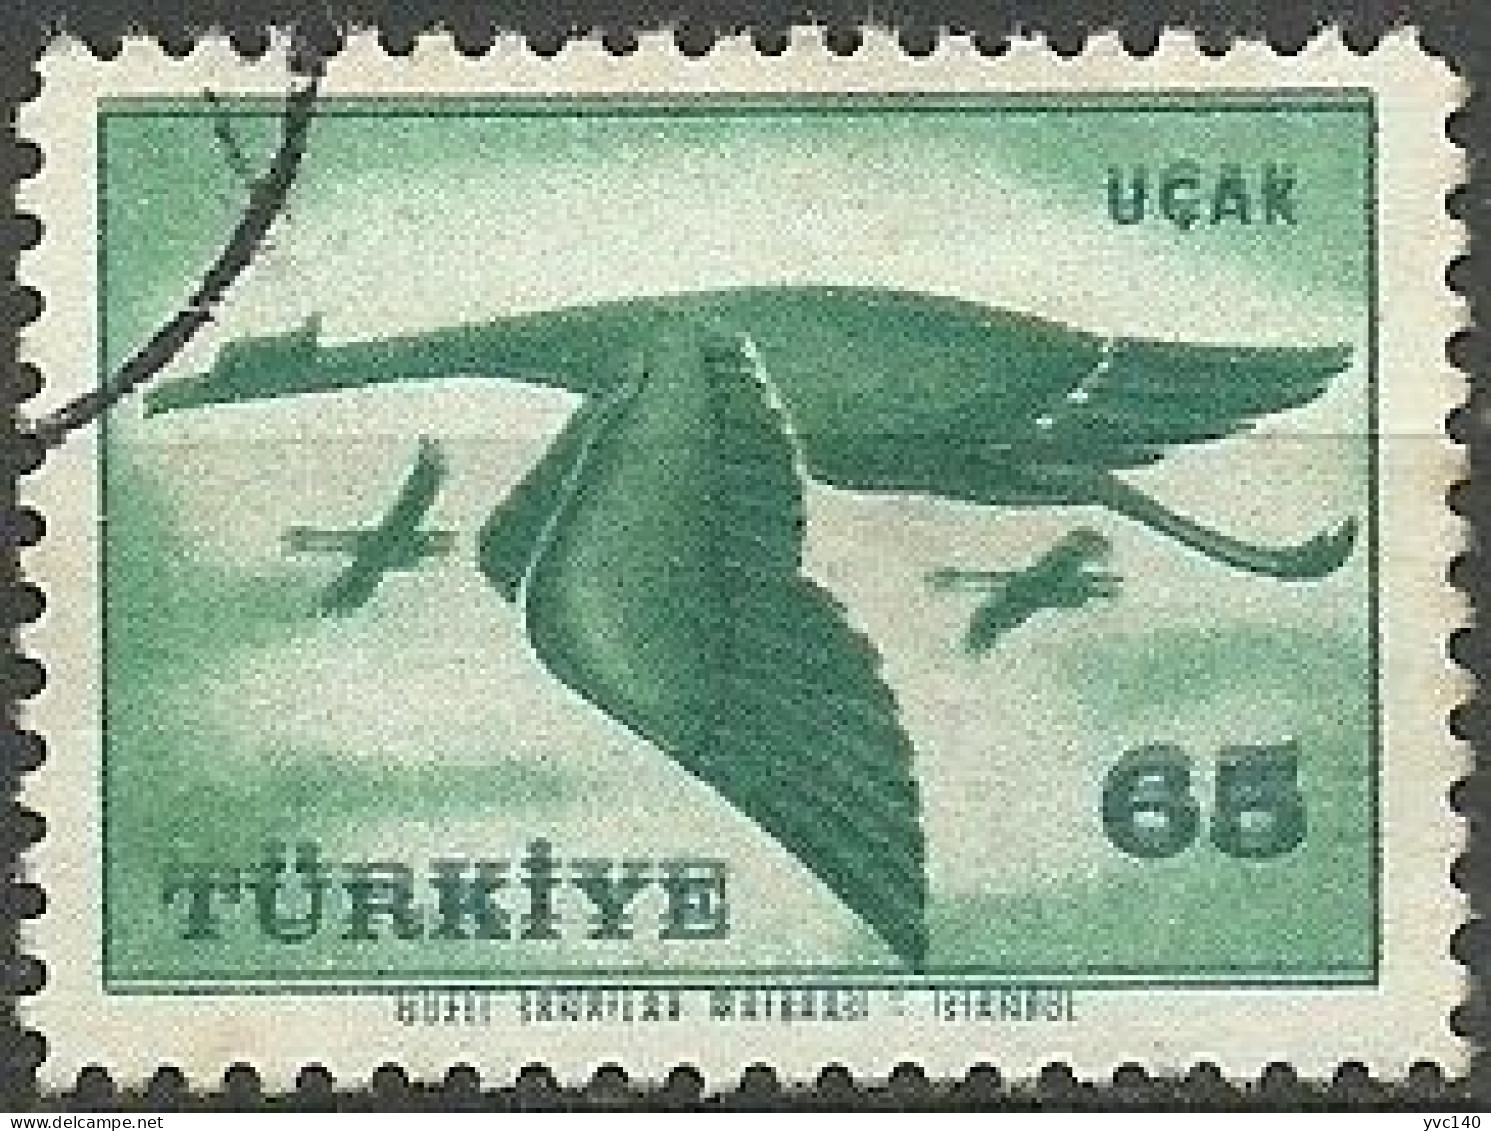 Turkey; 1959 Airmail Stamp 65 K. ERROR "Shifted Print" - Gebruikt